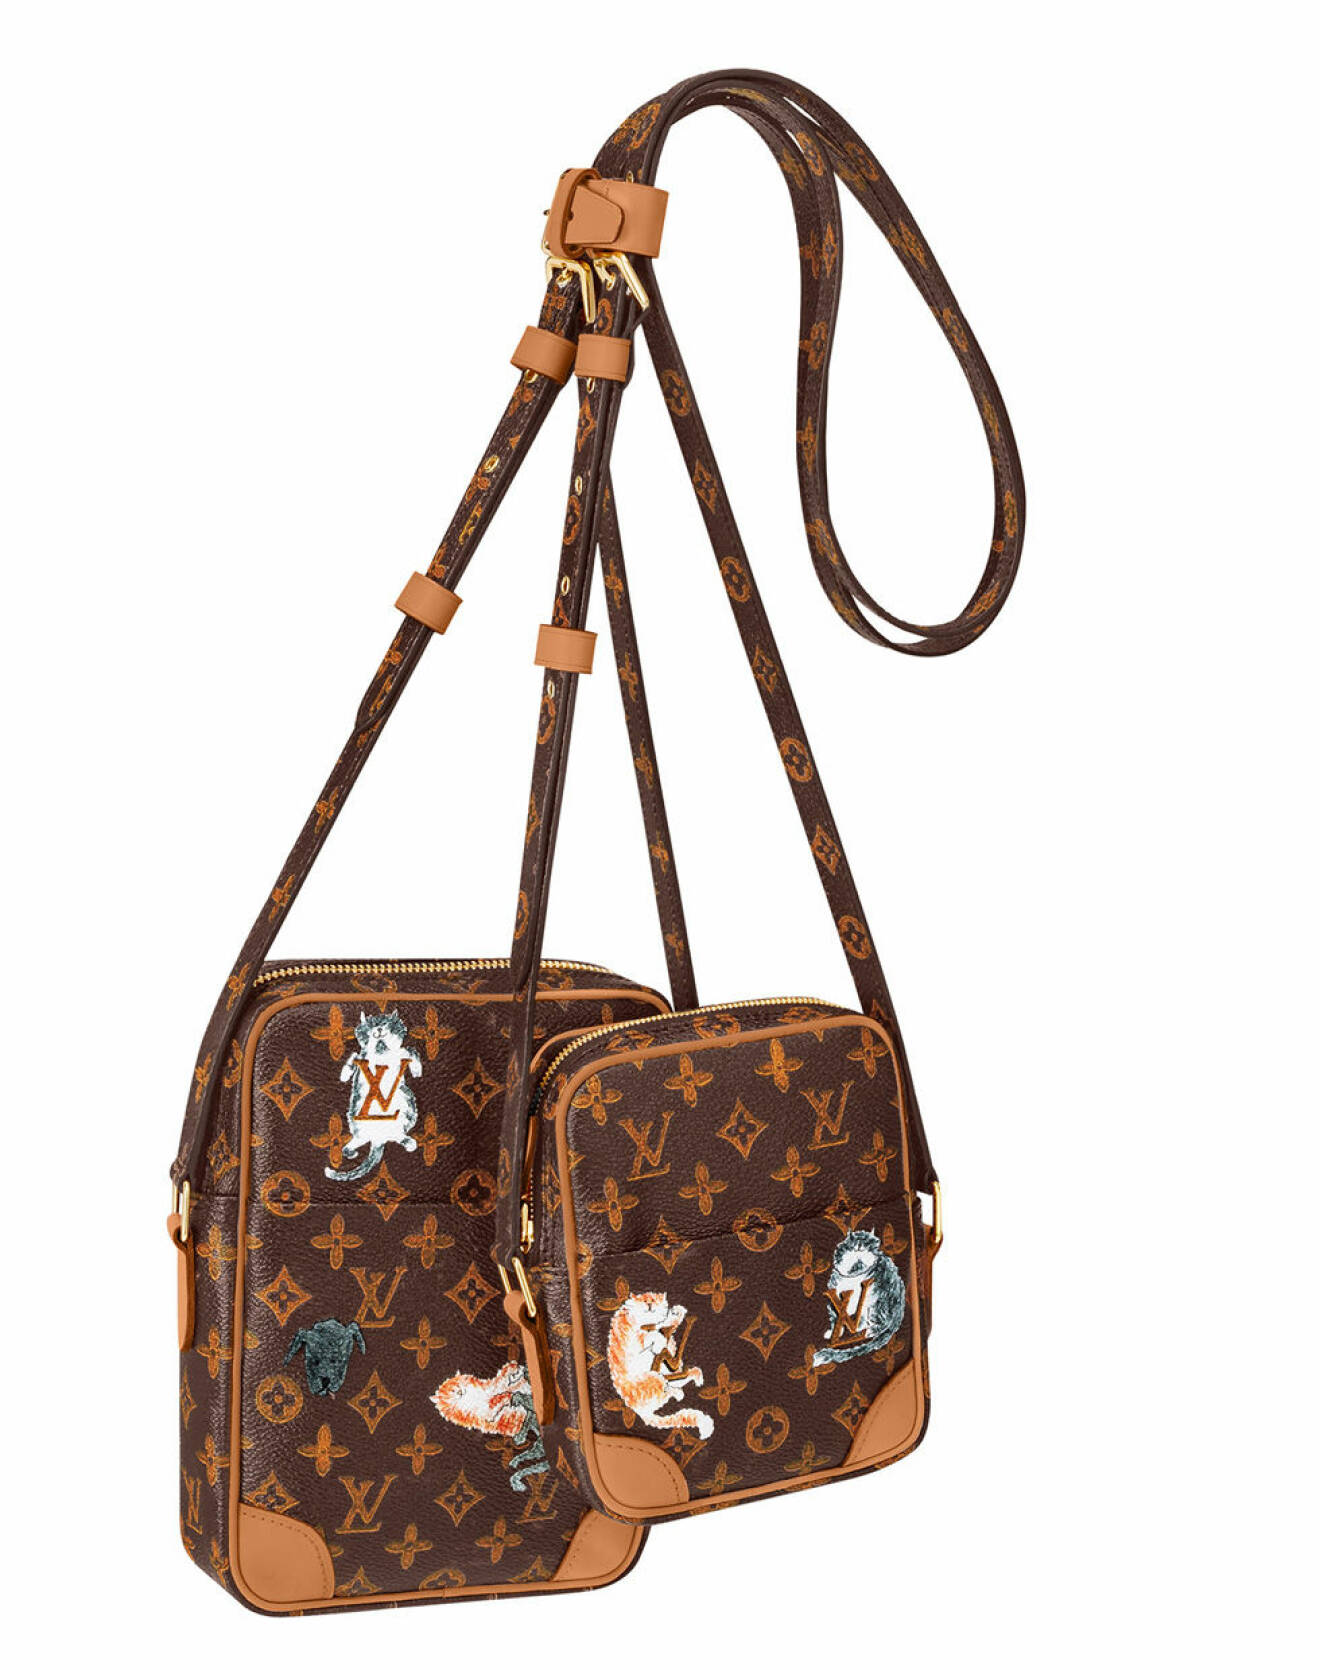 Louis Vuitton x Grace Coddington double bag